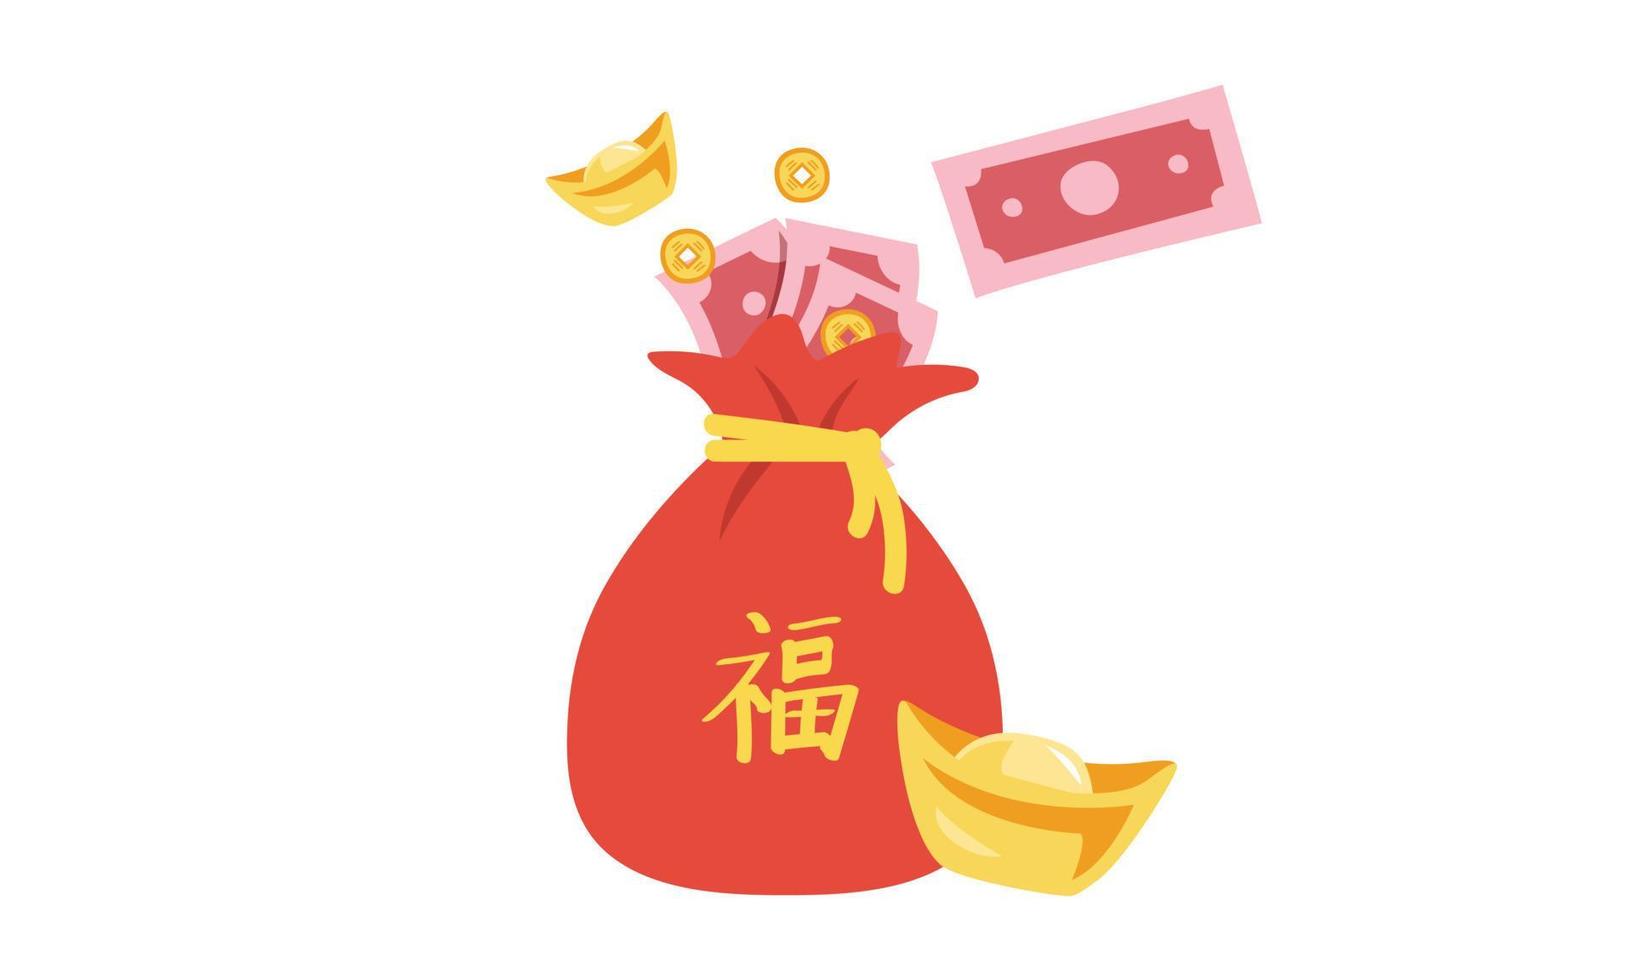 kinesisk ny år pengar väska ClipArt. enkel röd väska full av papper pengar, mynt och gyllene göt platt vektor illustration tecknad serie teckning. kinesisk text betyder Bra tur. asiatisk lunar ny år begrepp